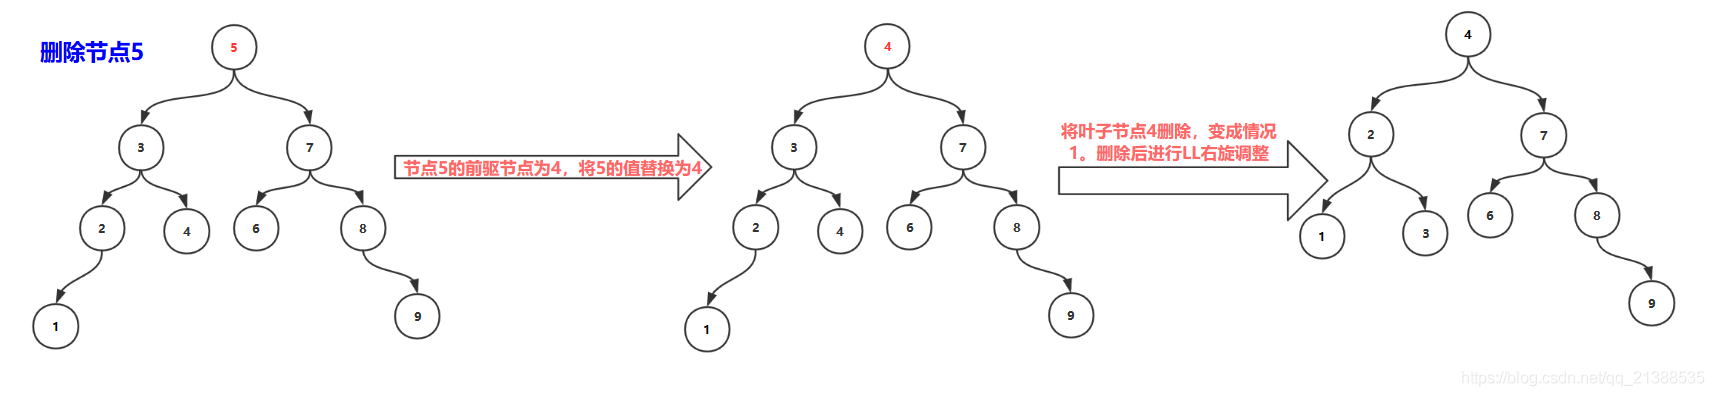 AVL树 - 图20